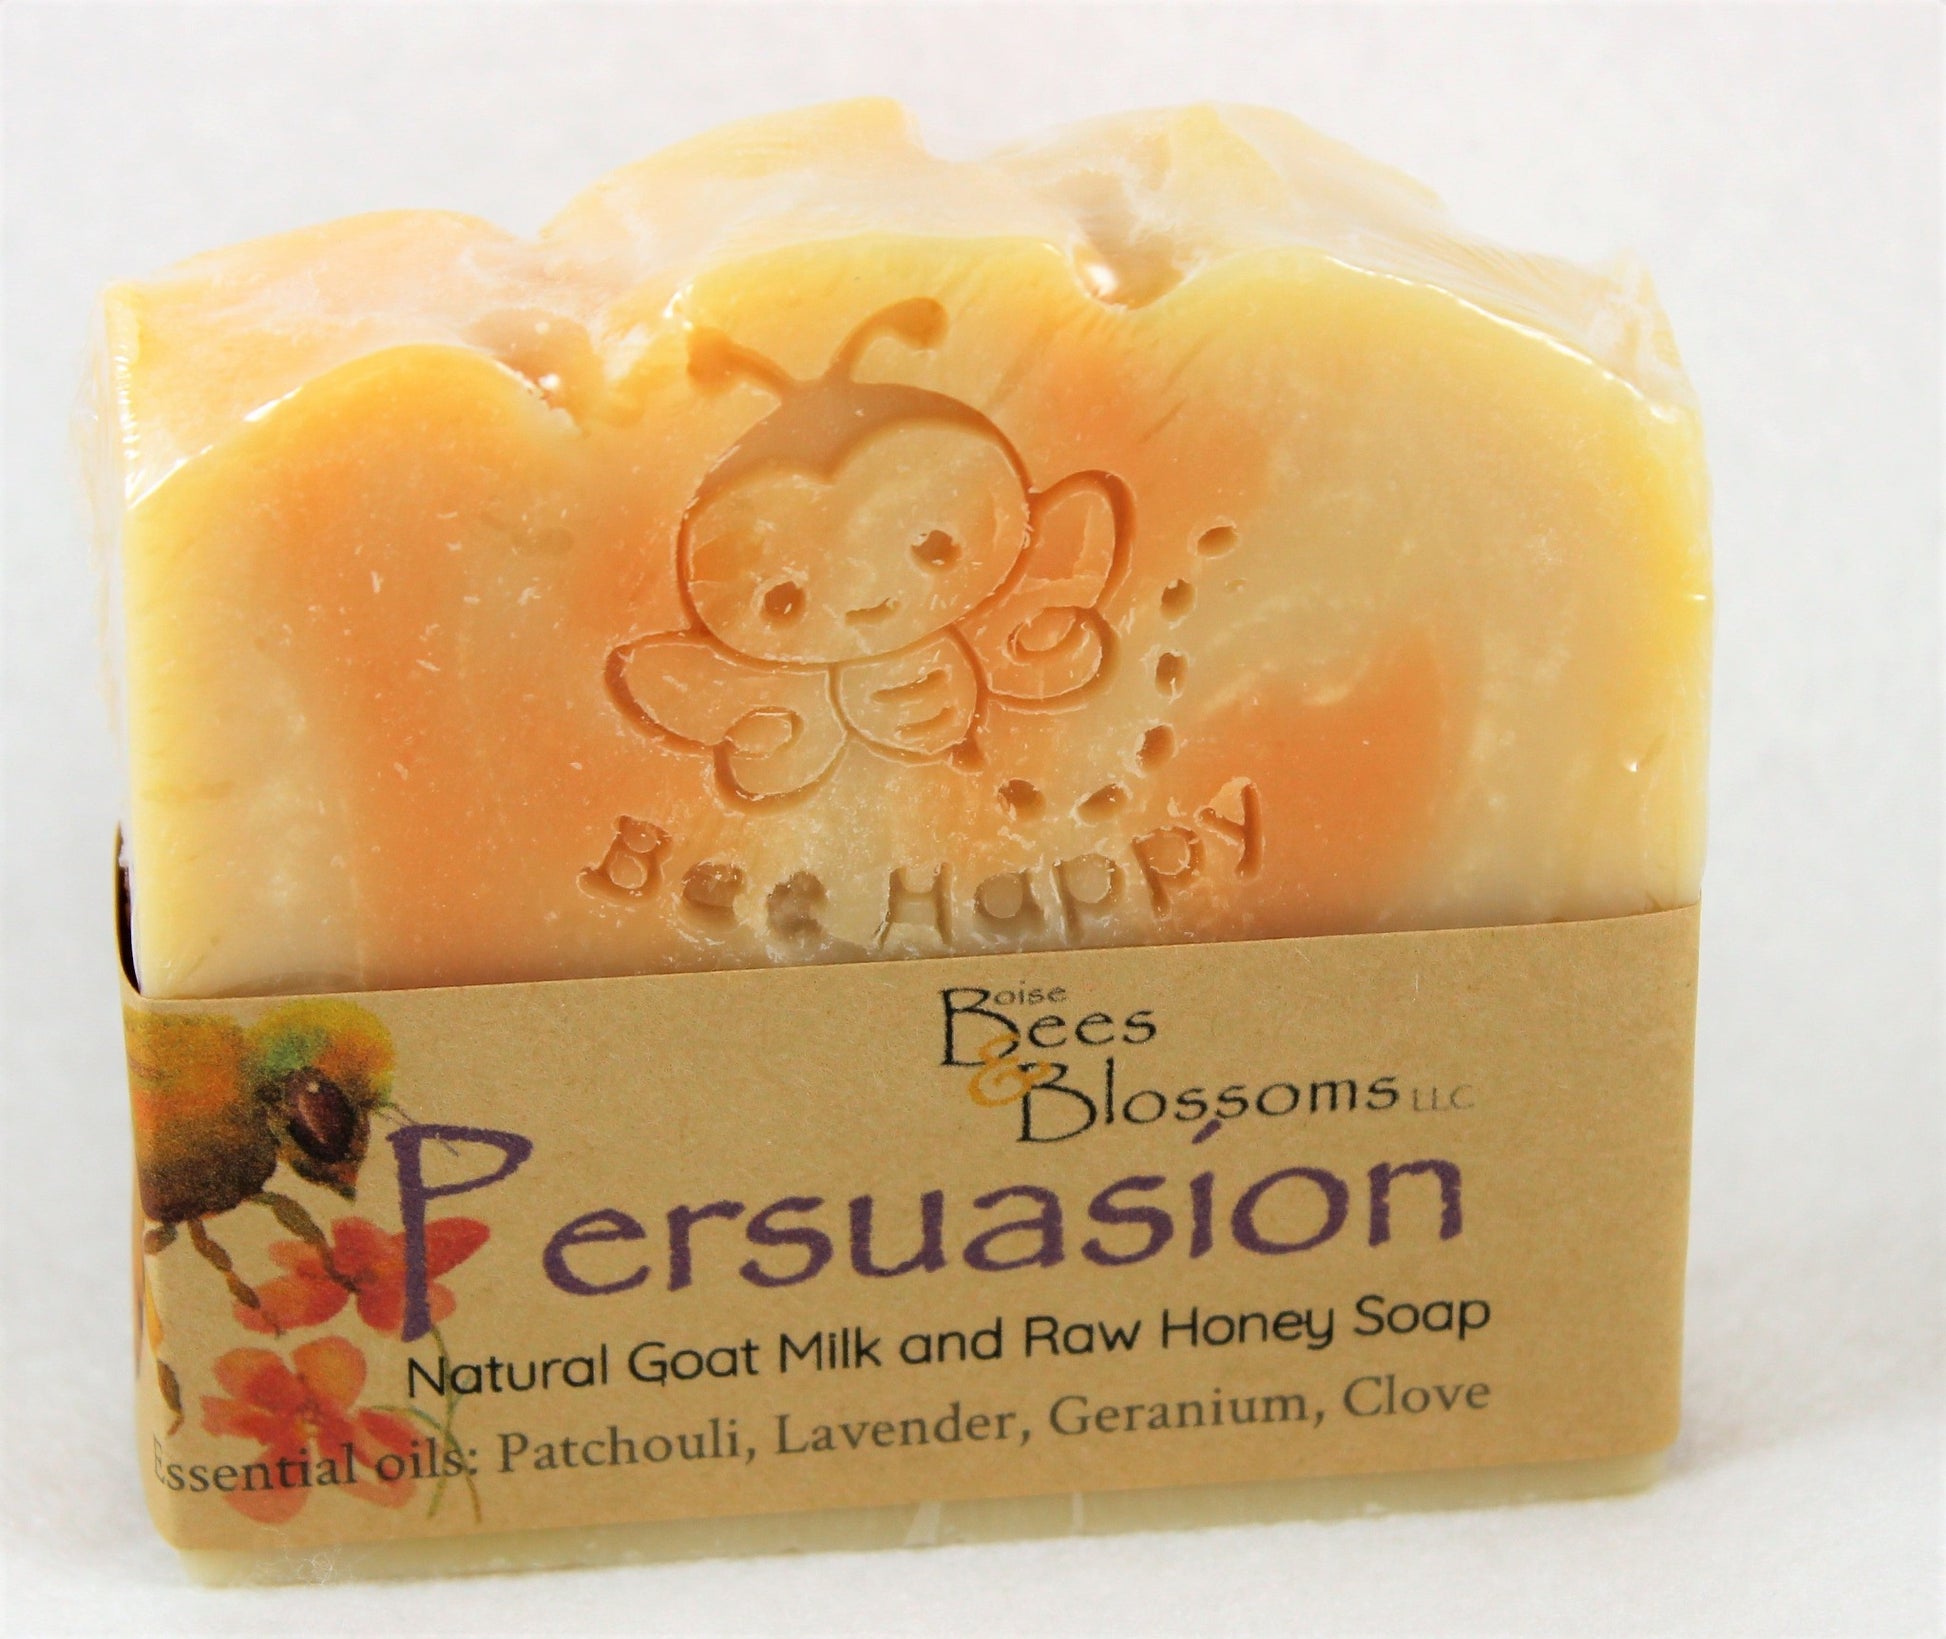 Patchouli, lavender, geranium, clove scented artisan soap